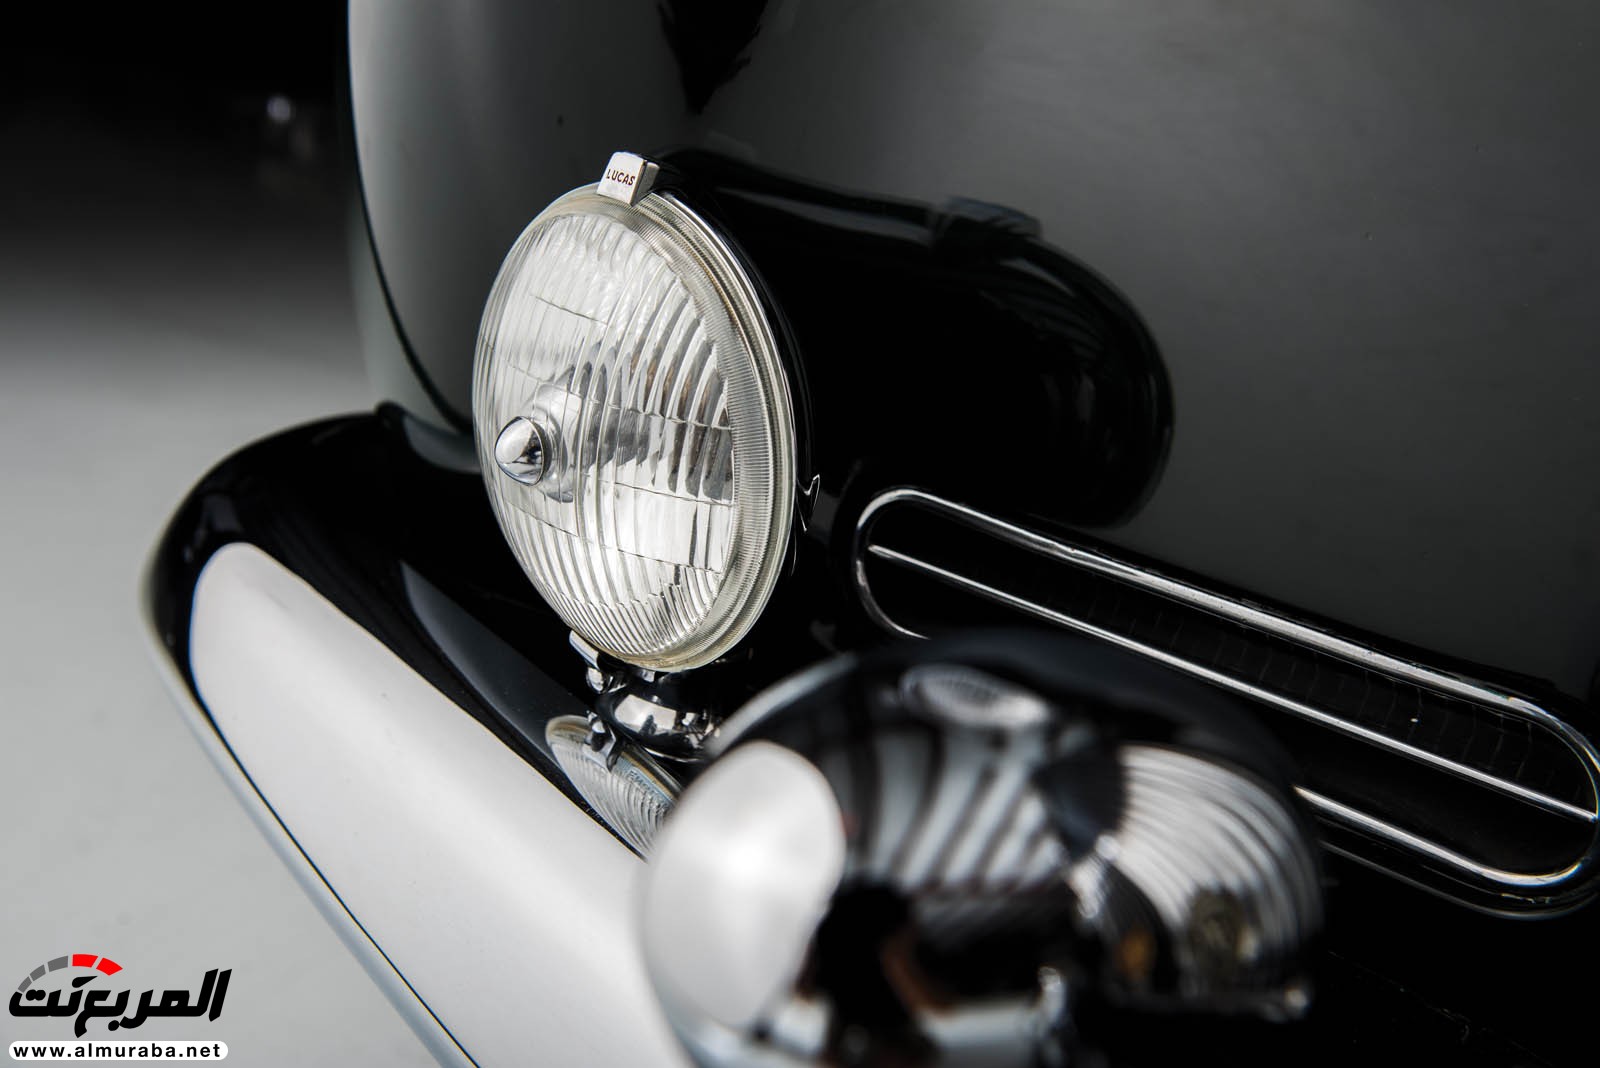 "رولز رويس" سيلفر كلاود 1959 ذات هيكلة الواجن تتوجه لتباع في مزاد عالمي Rolls-Royce Silver Cloud 80